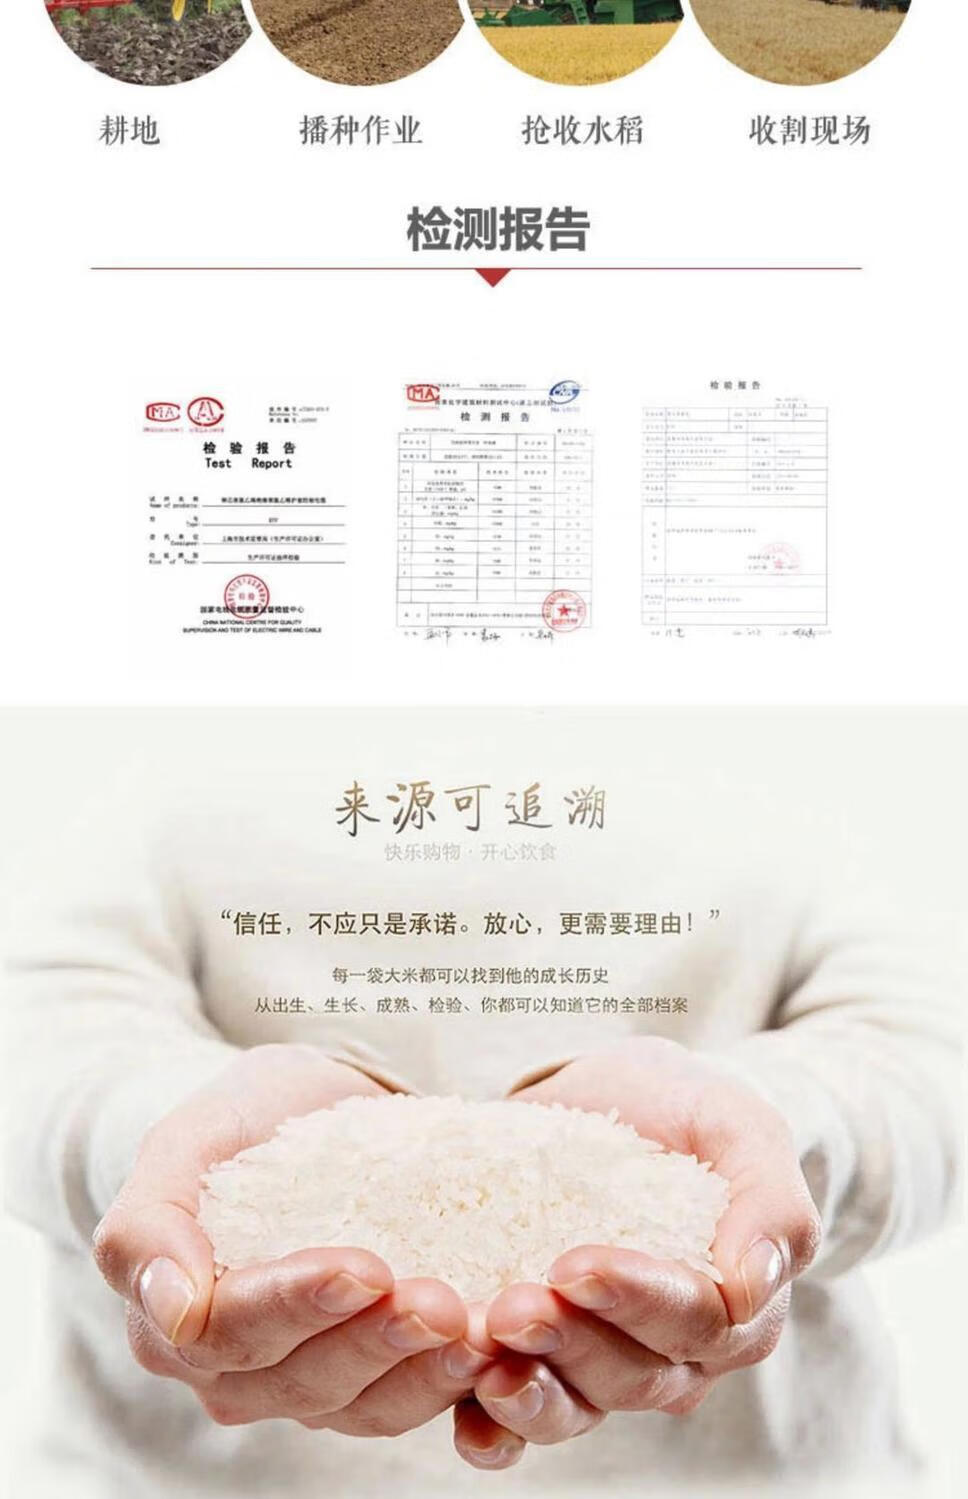 米业海丰优质大米5kg10kg上海新鲜好米专家当月新米农场海丰大米10斤